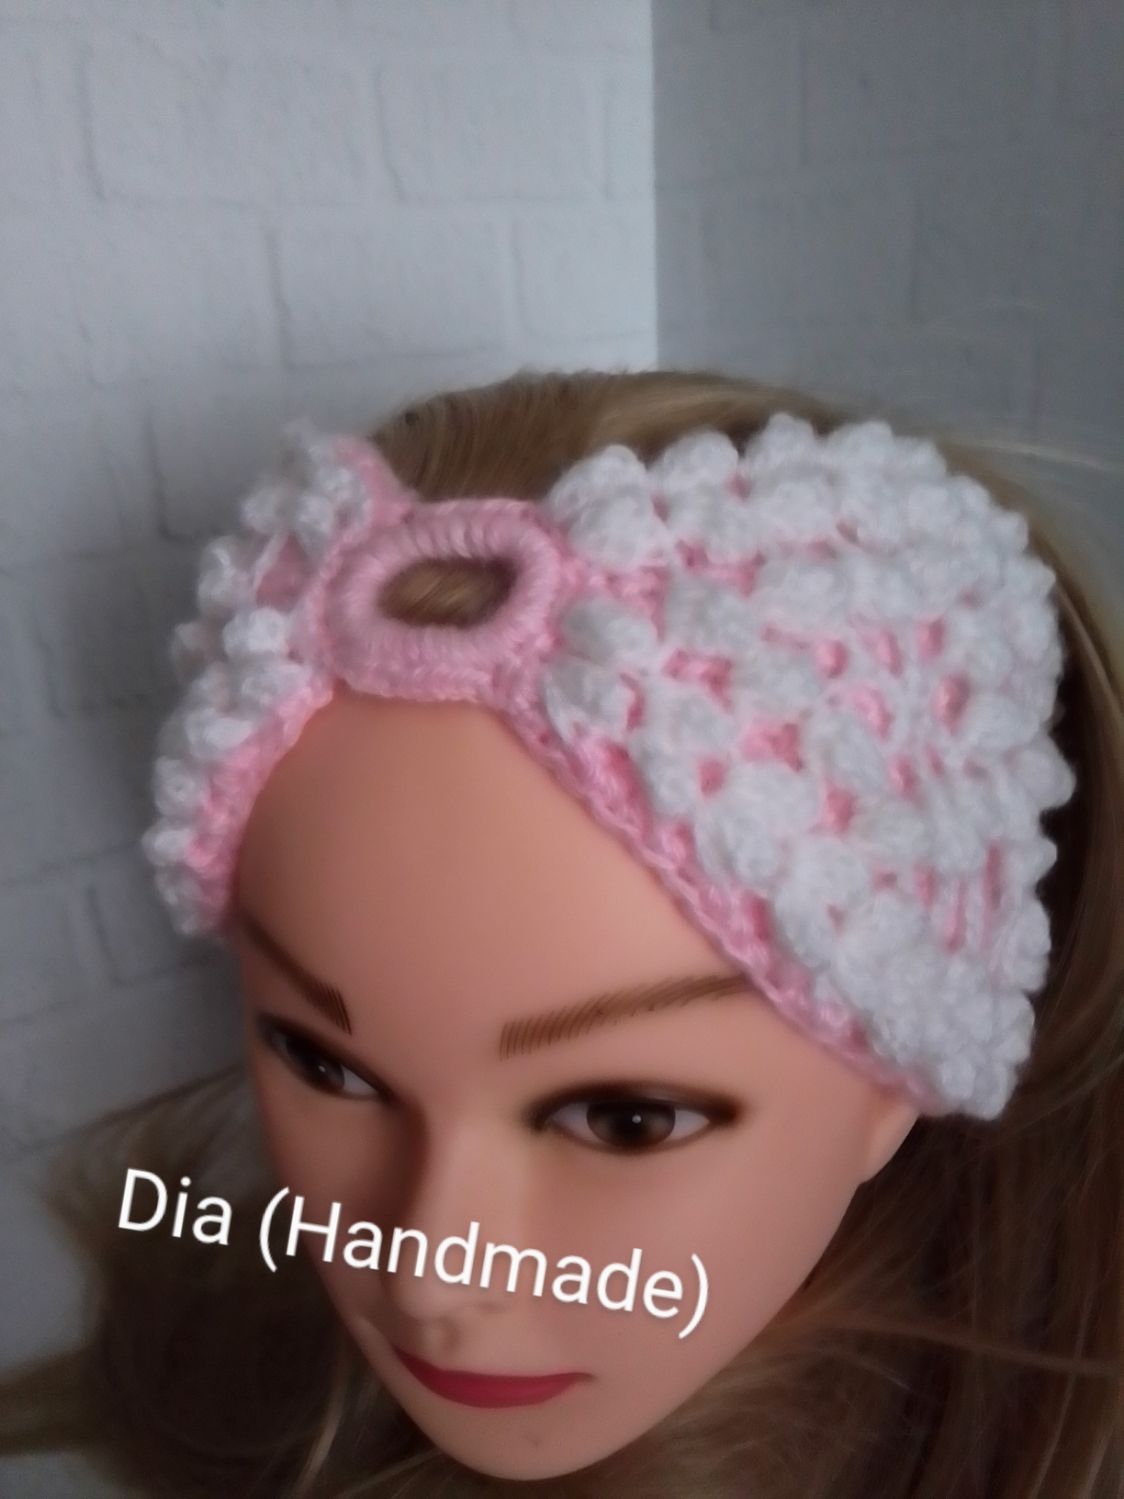 Вязаные повязки на голову спицами с описанием для женщин